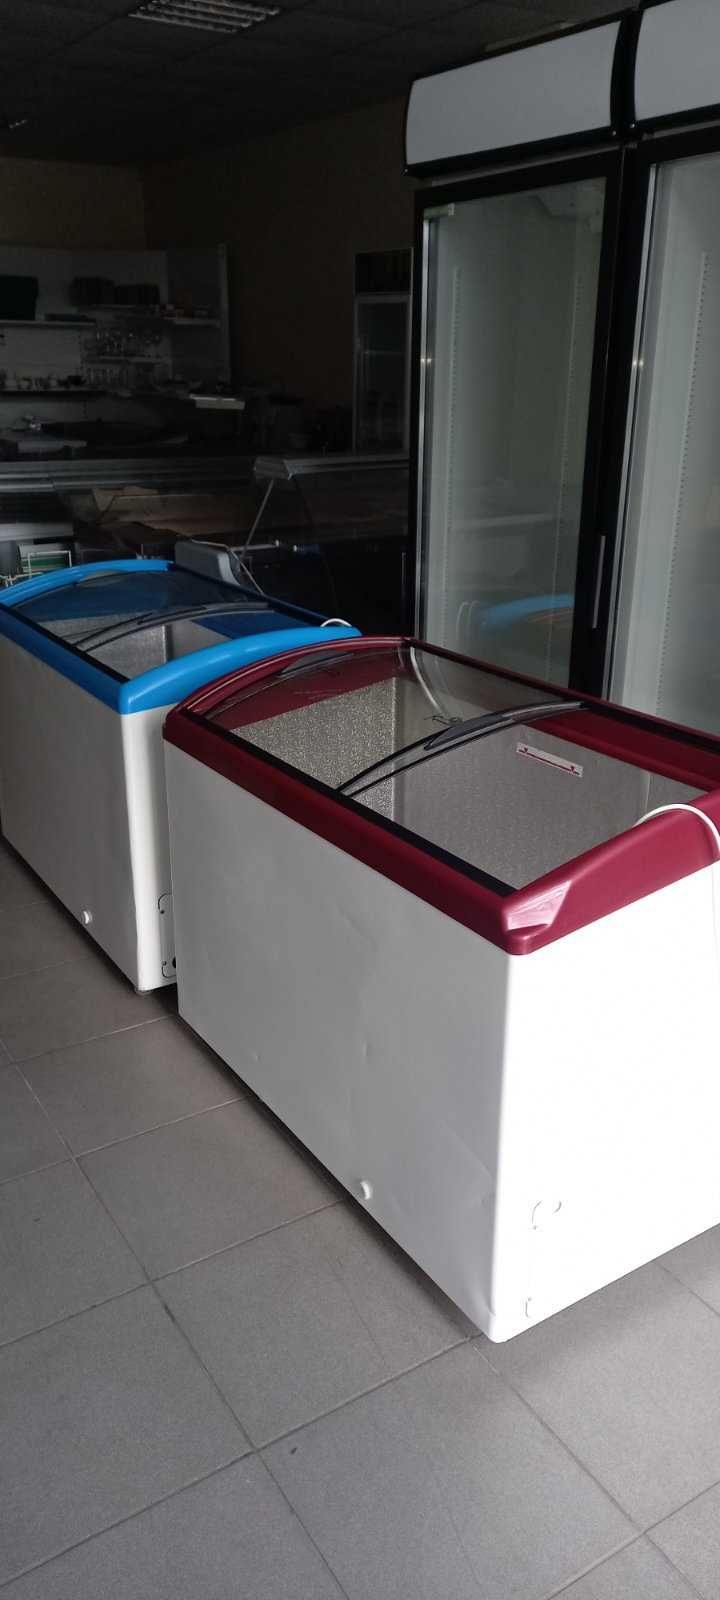 холодильне обладнання вітрини / витрина холодильная